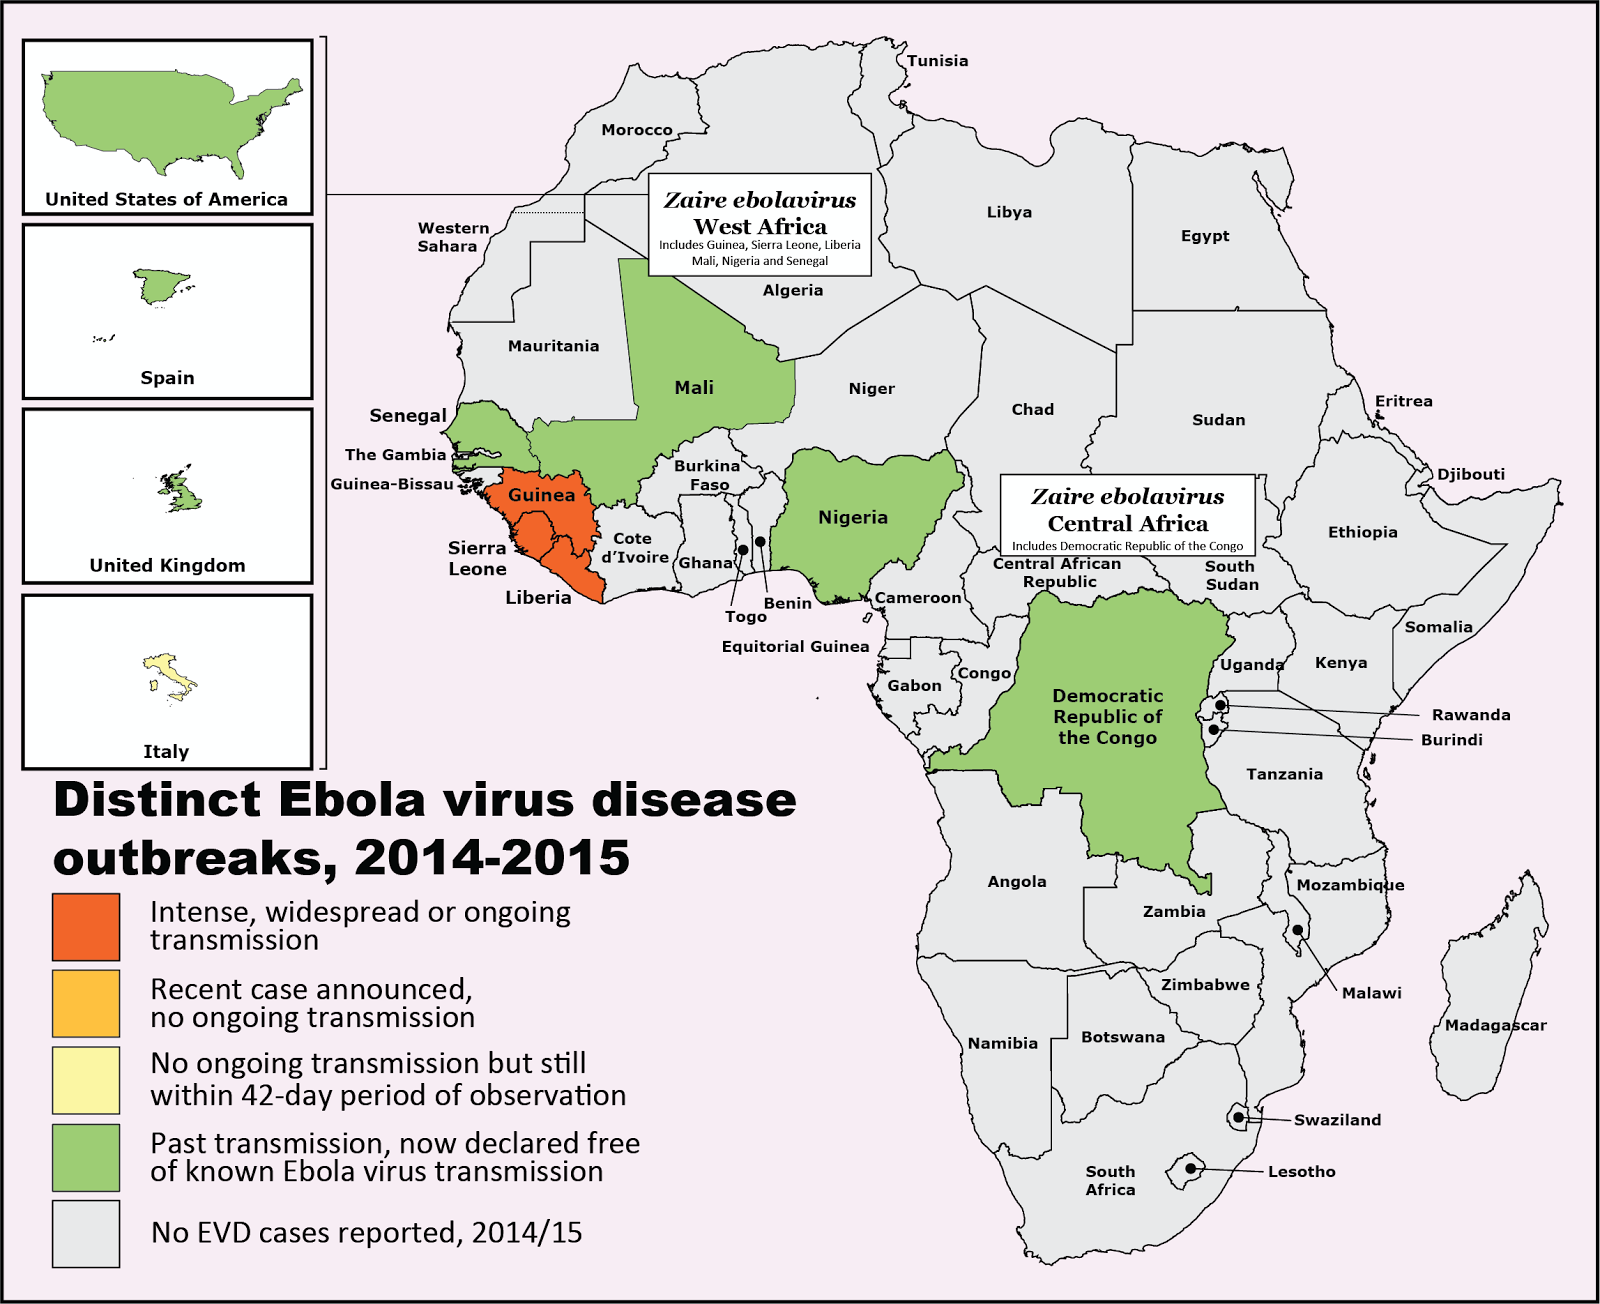 VDU's blog: Snapdate: Ebola virus disease 2014/2015 by map...